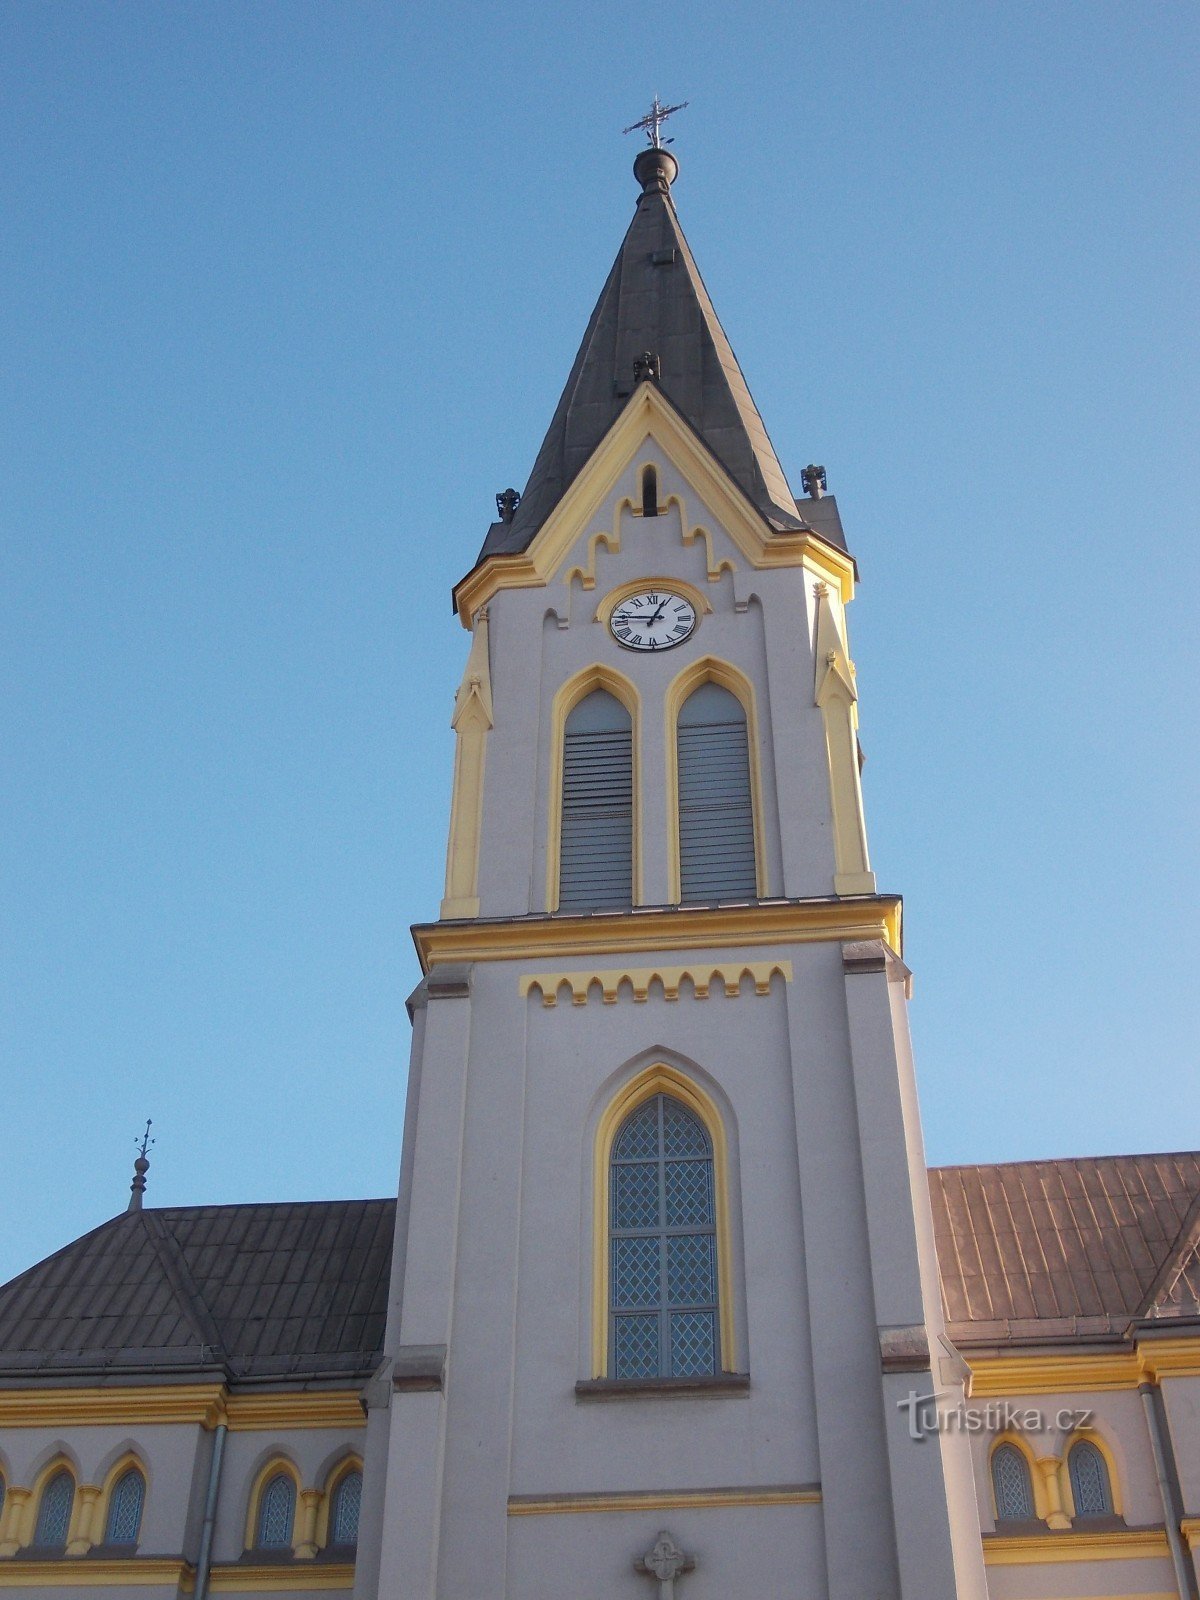 turnul bisericii